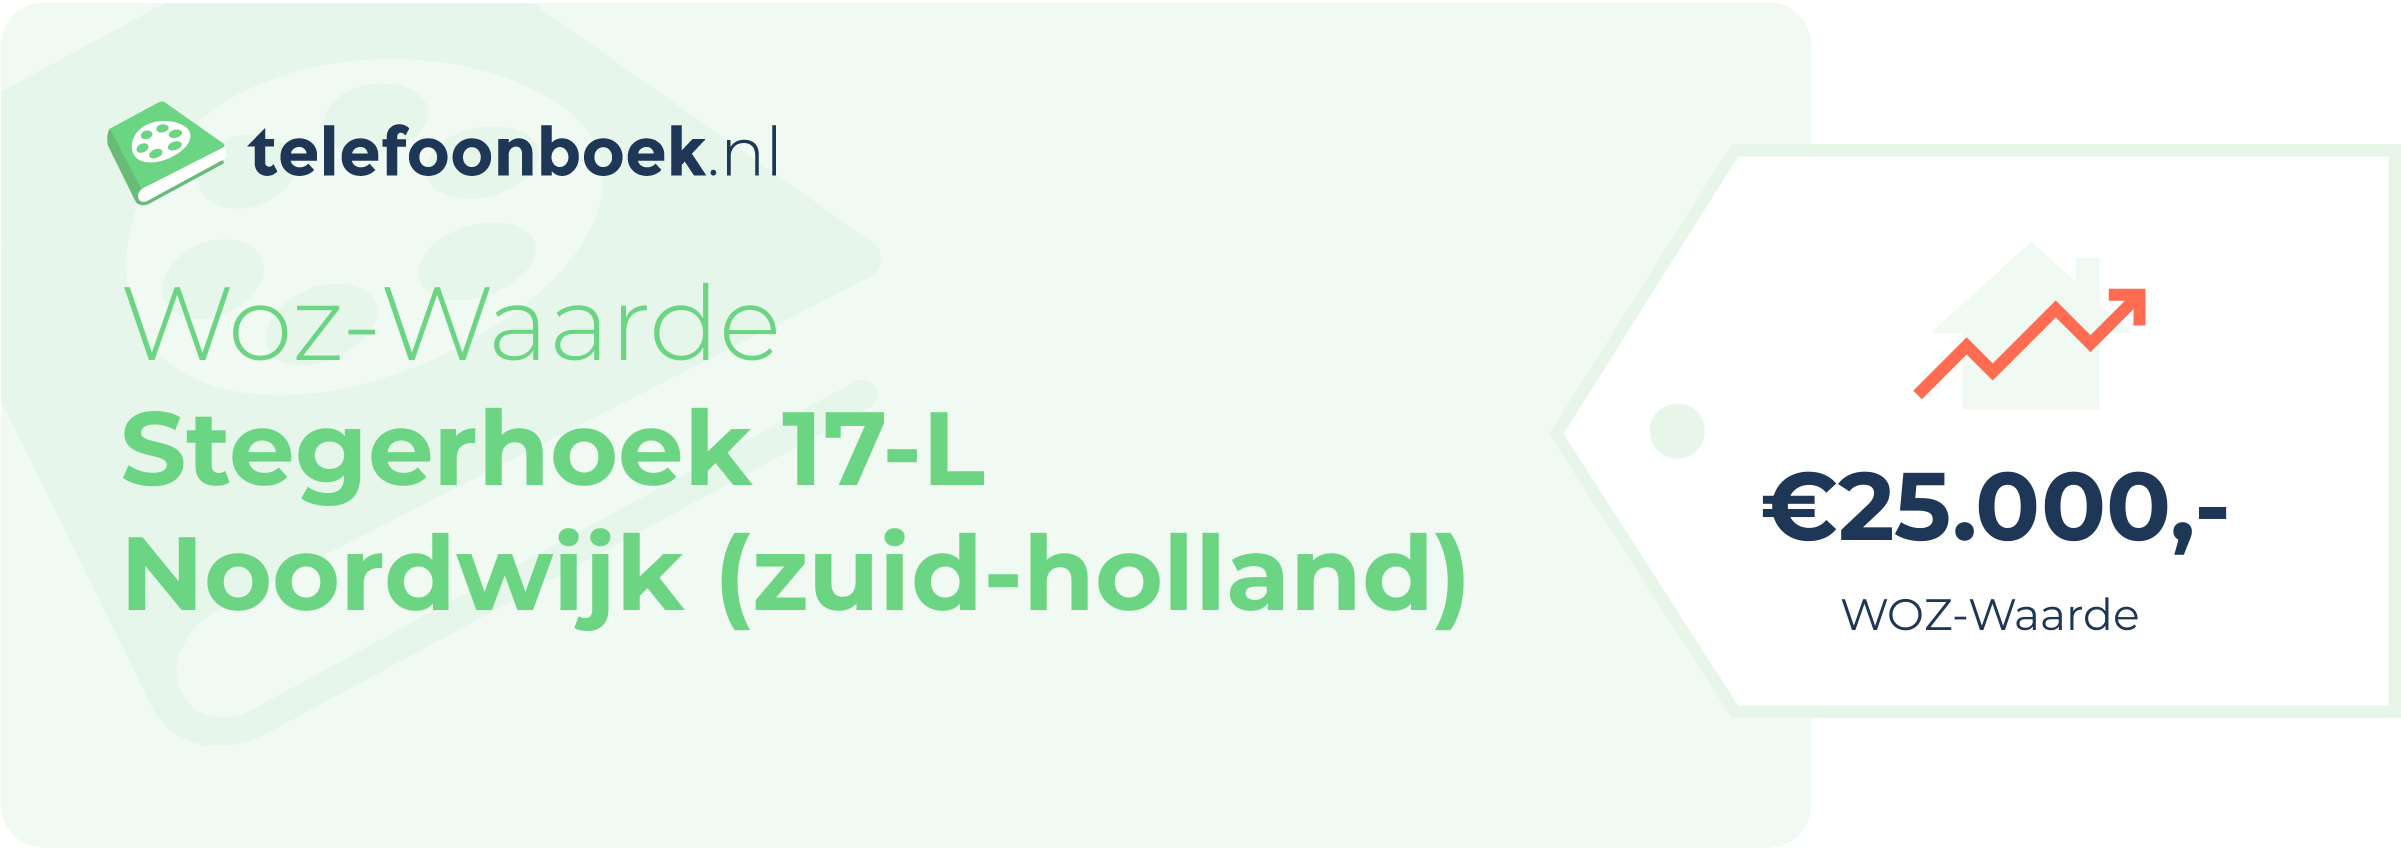 WOZ-waarde Stegerhoek 17-L Noordwijk (Zuid-Holland)